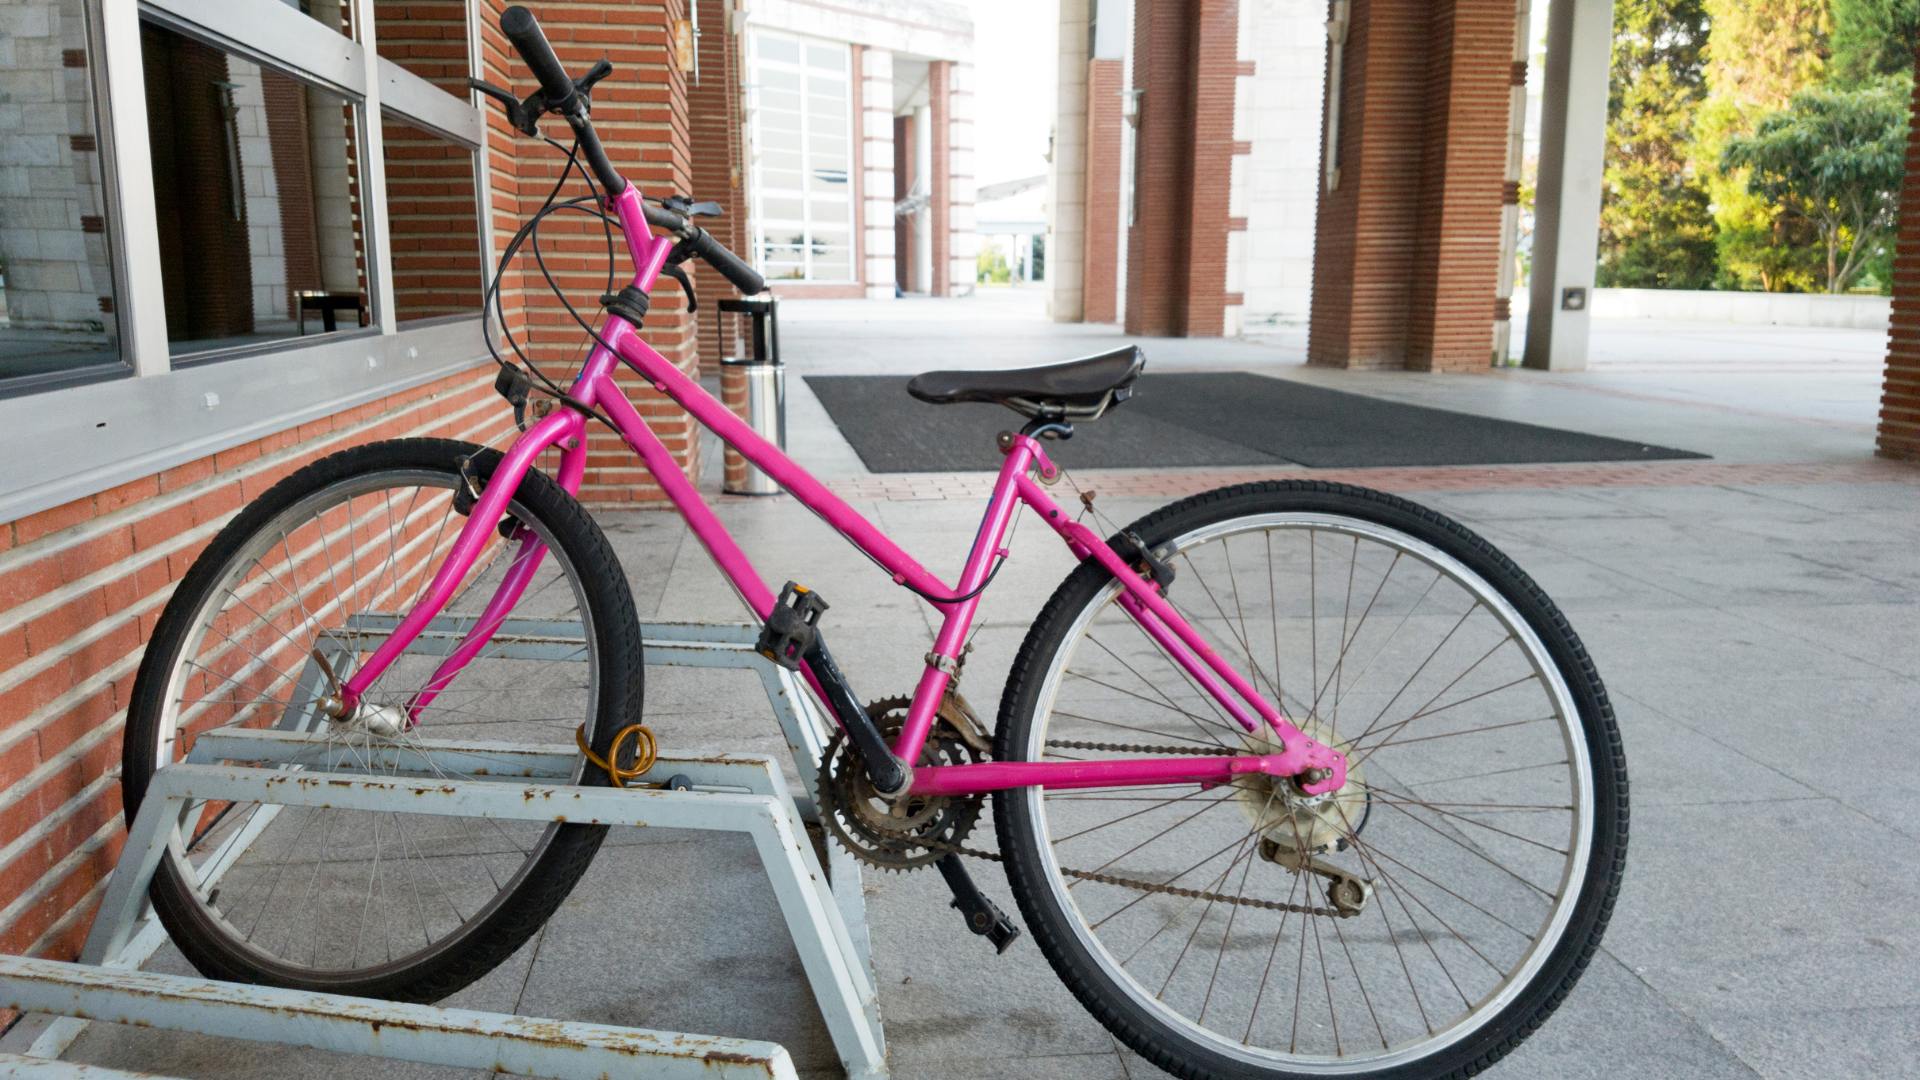 Sonhar com Bicicleta Rosa: Qual é o Significado?